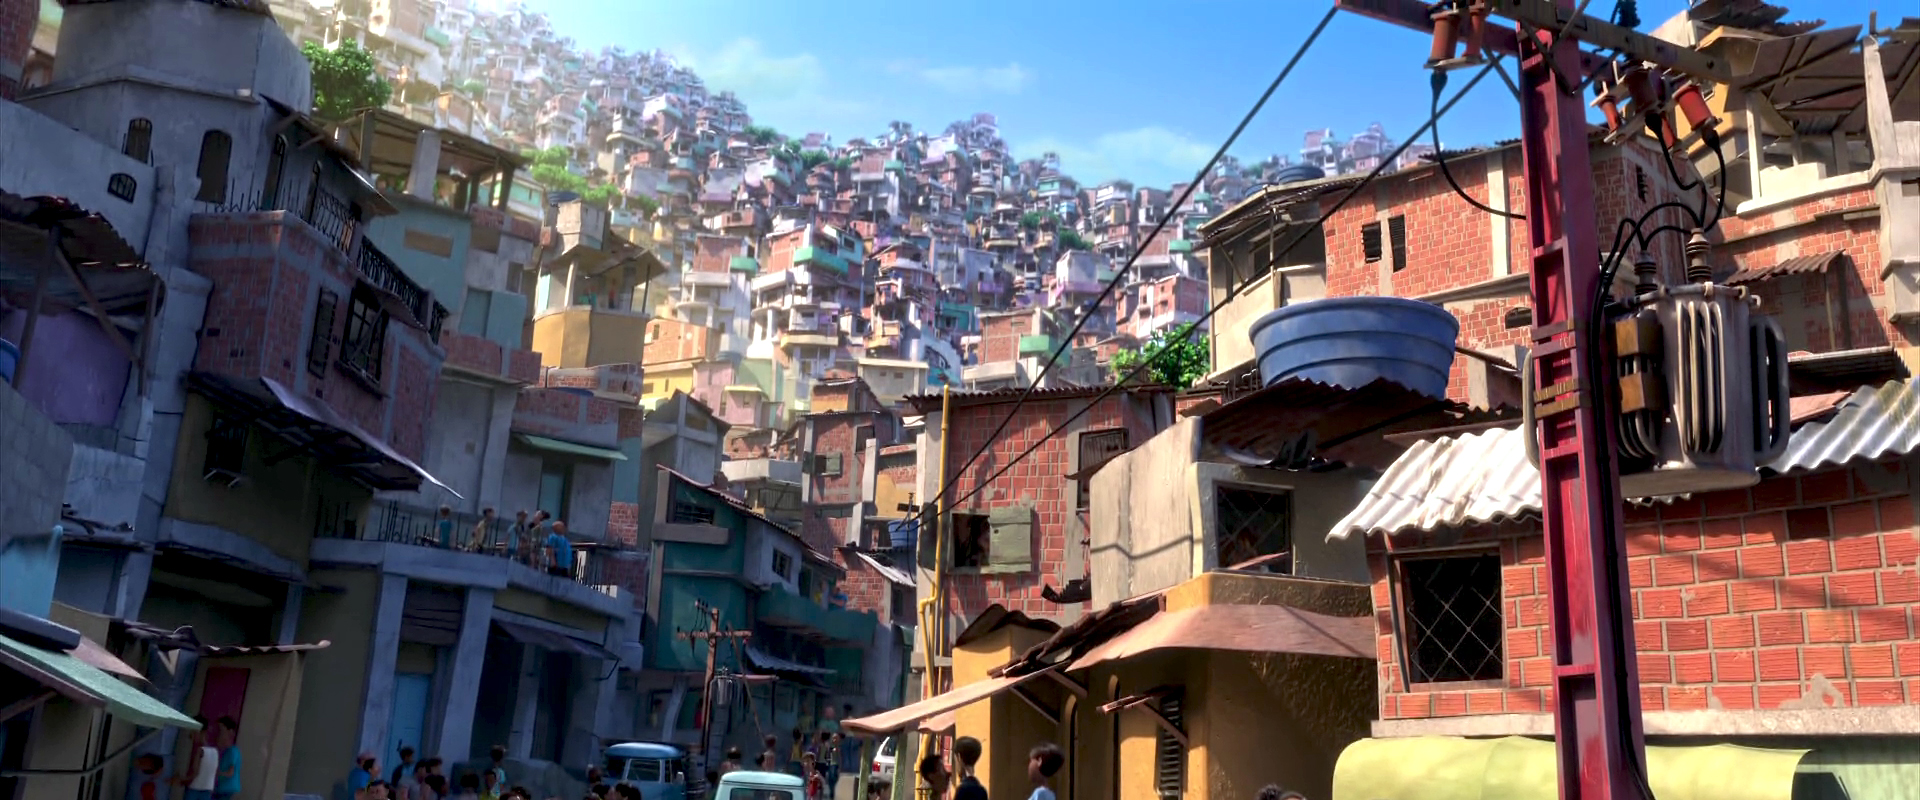 Favela A Origem